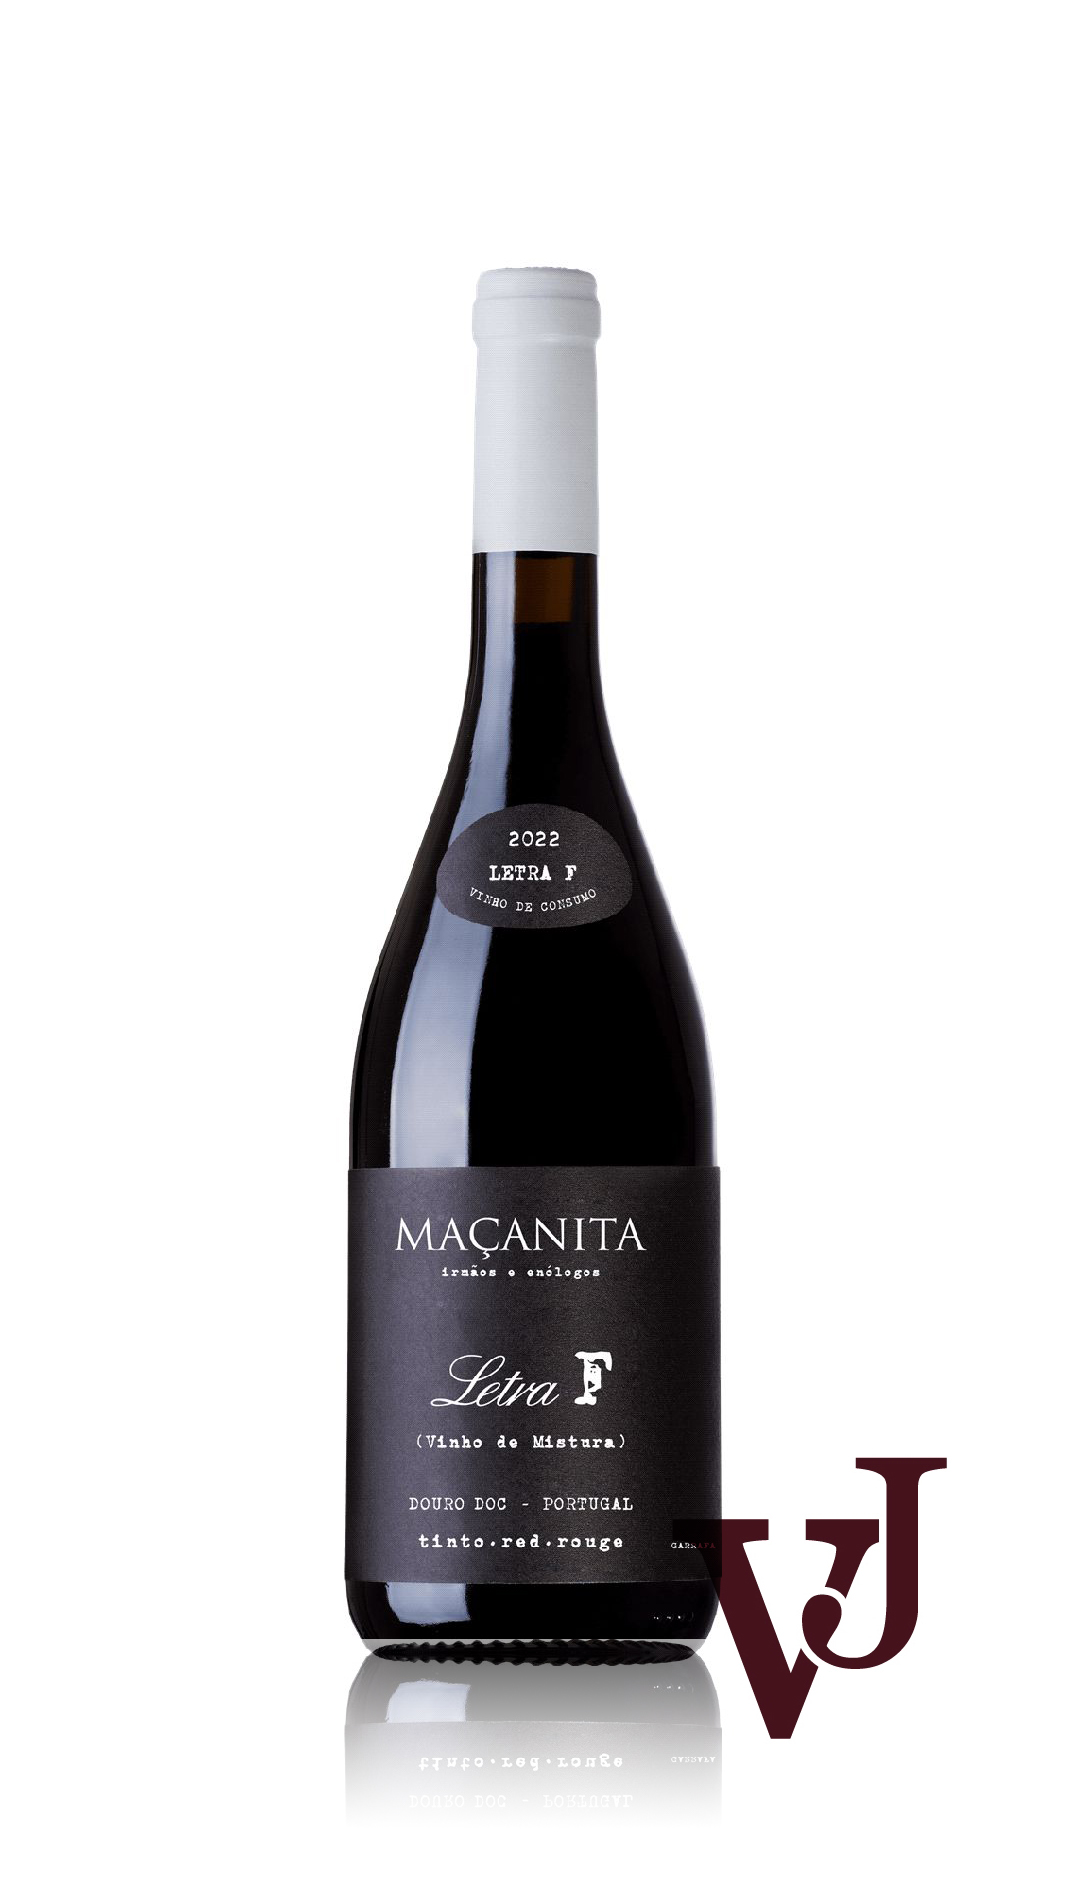 Rött Vin - Macanita Letra F 2022 artikel nummer 7132601 från producenten ADEGA MAÇANITA VINHOS från området Portugal